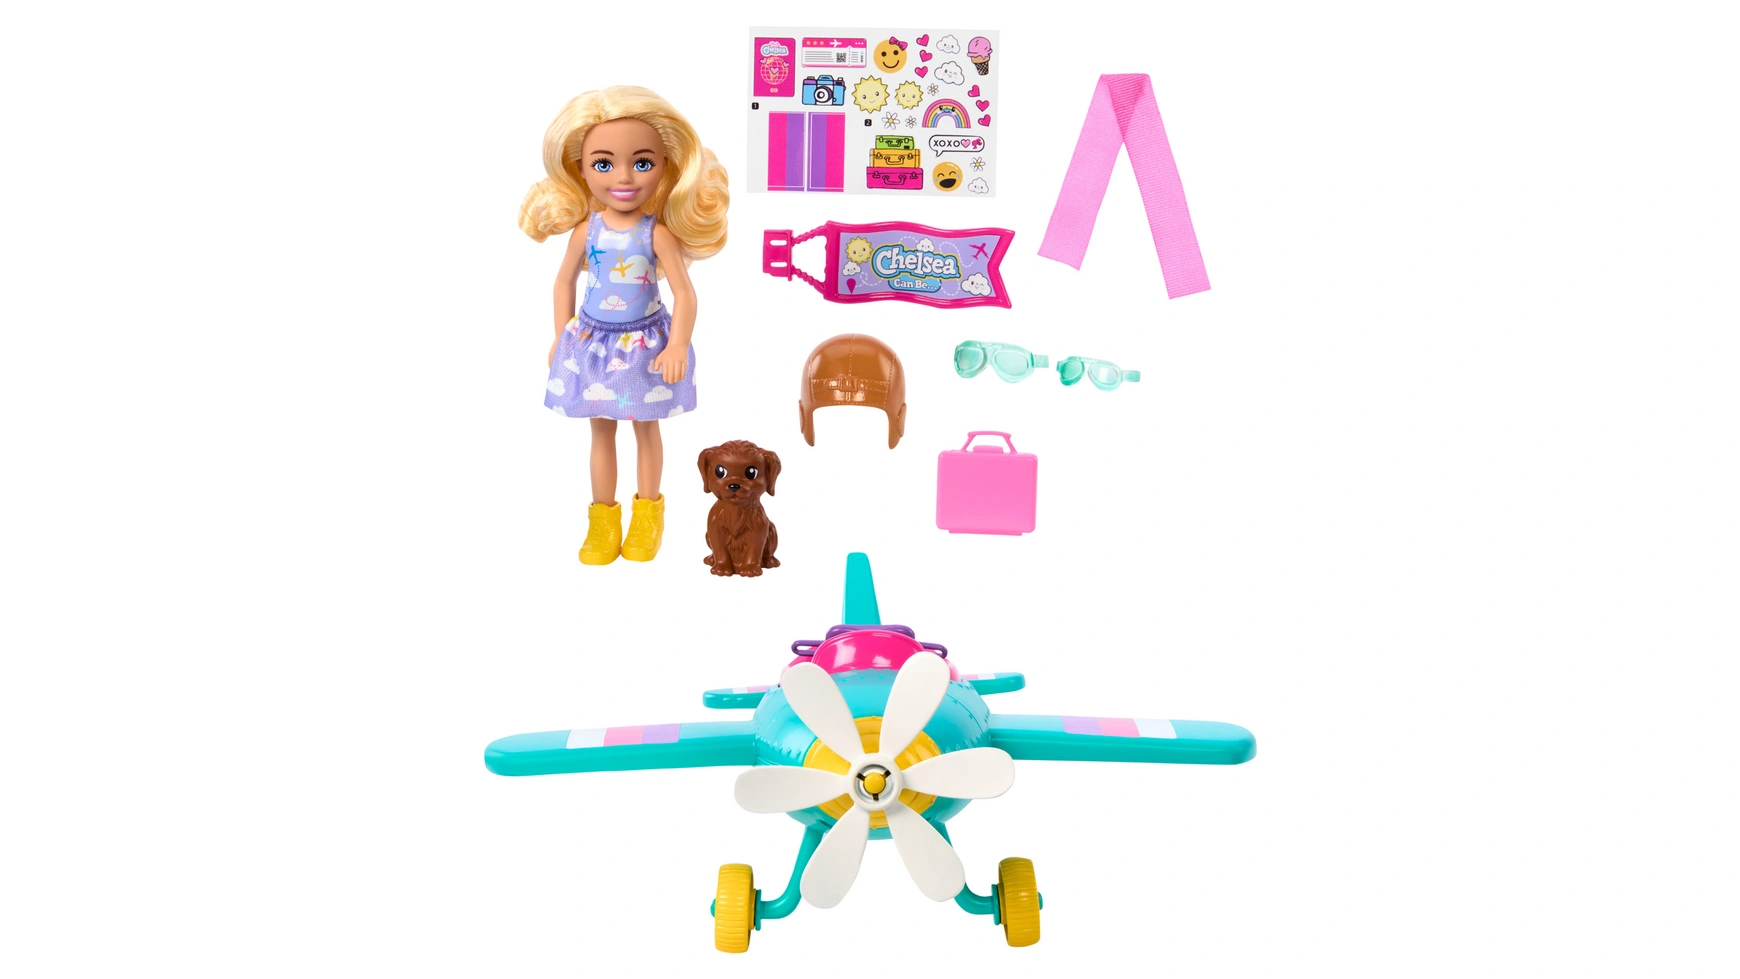 Barbie: Нью-Челси может быть самолетом